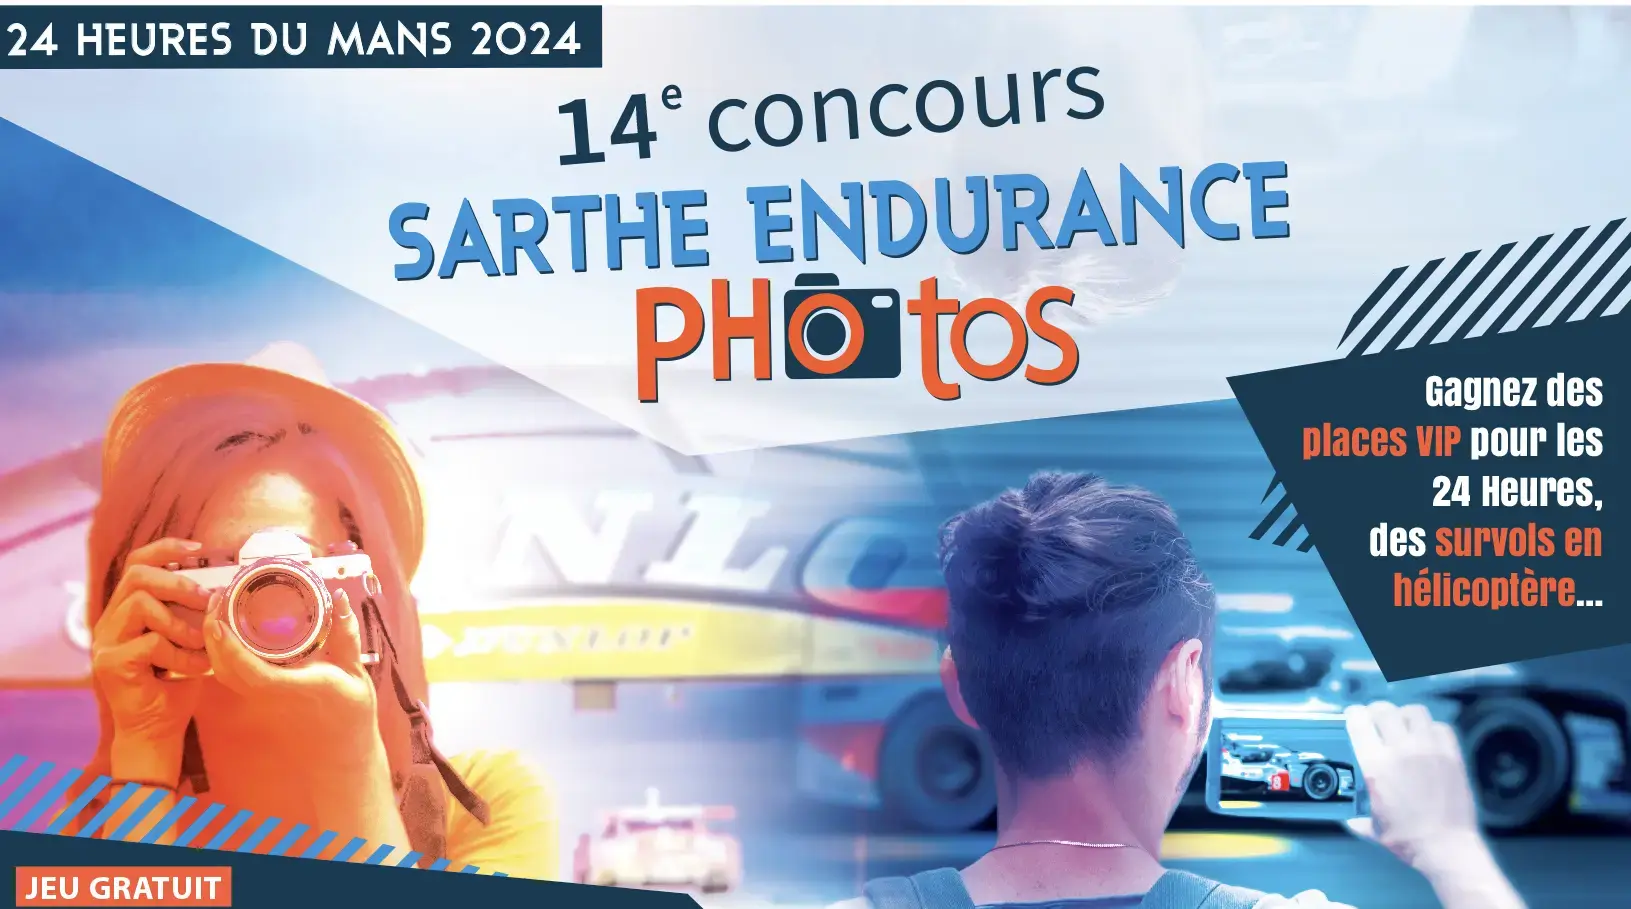 Concours sarthe endurance photos